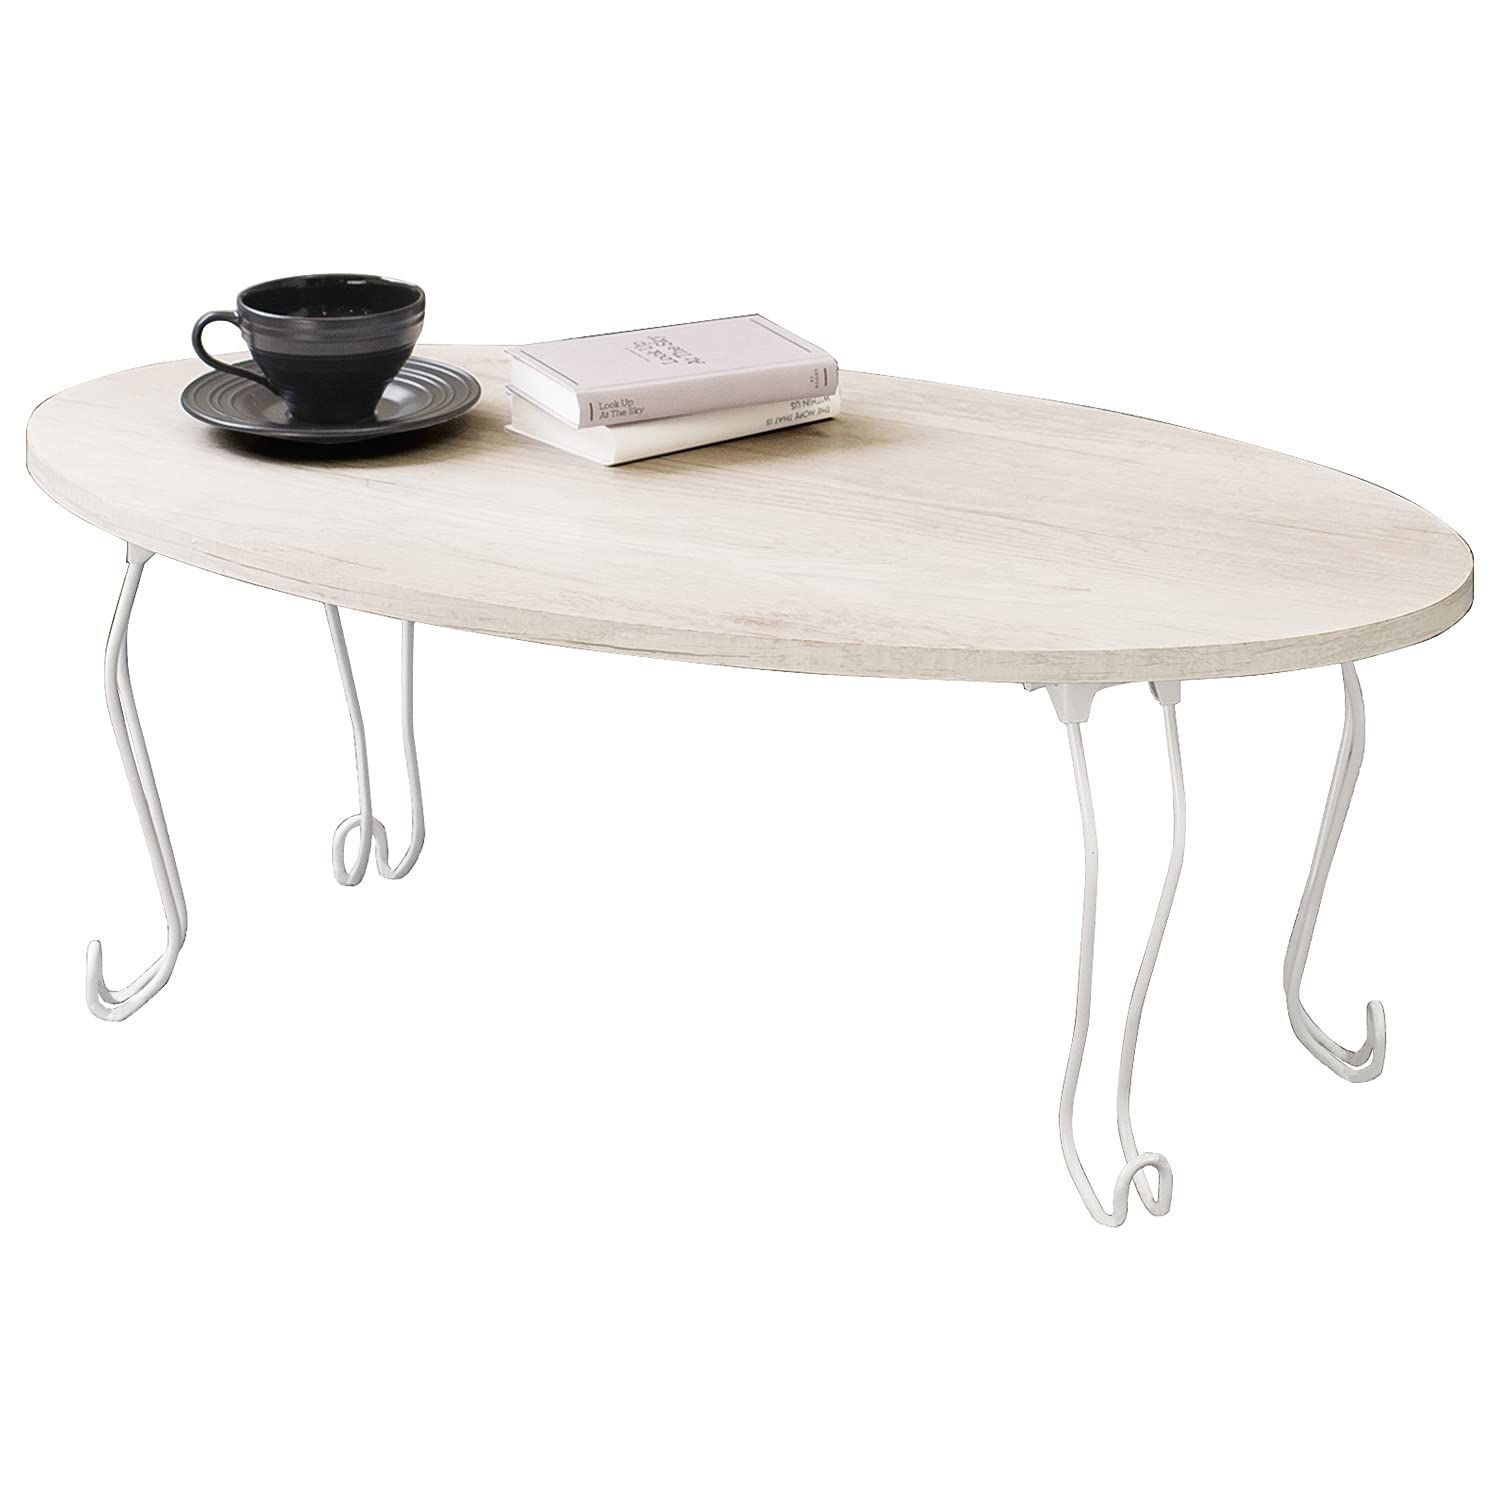 色: ホワイト】萩原 ローテーブル センターテーブル テーブル 机